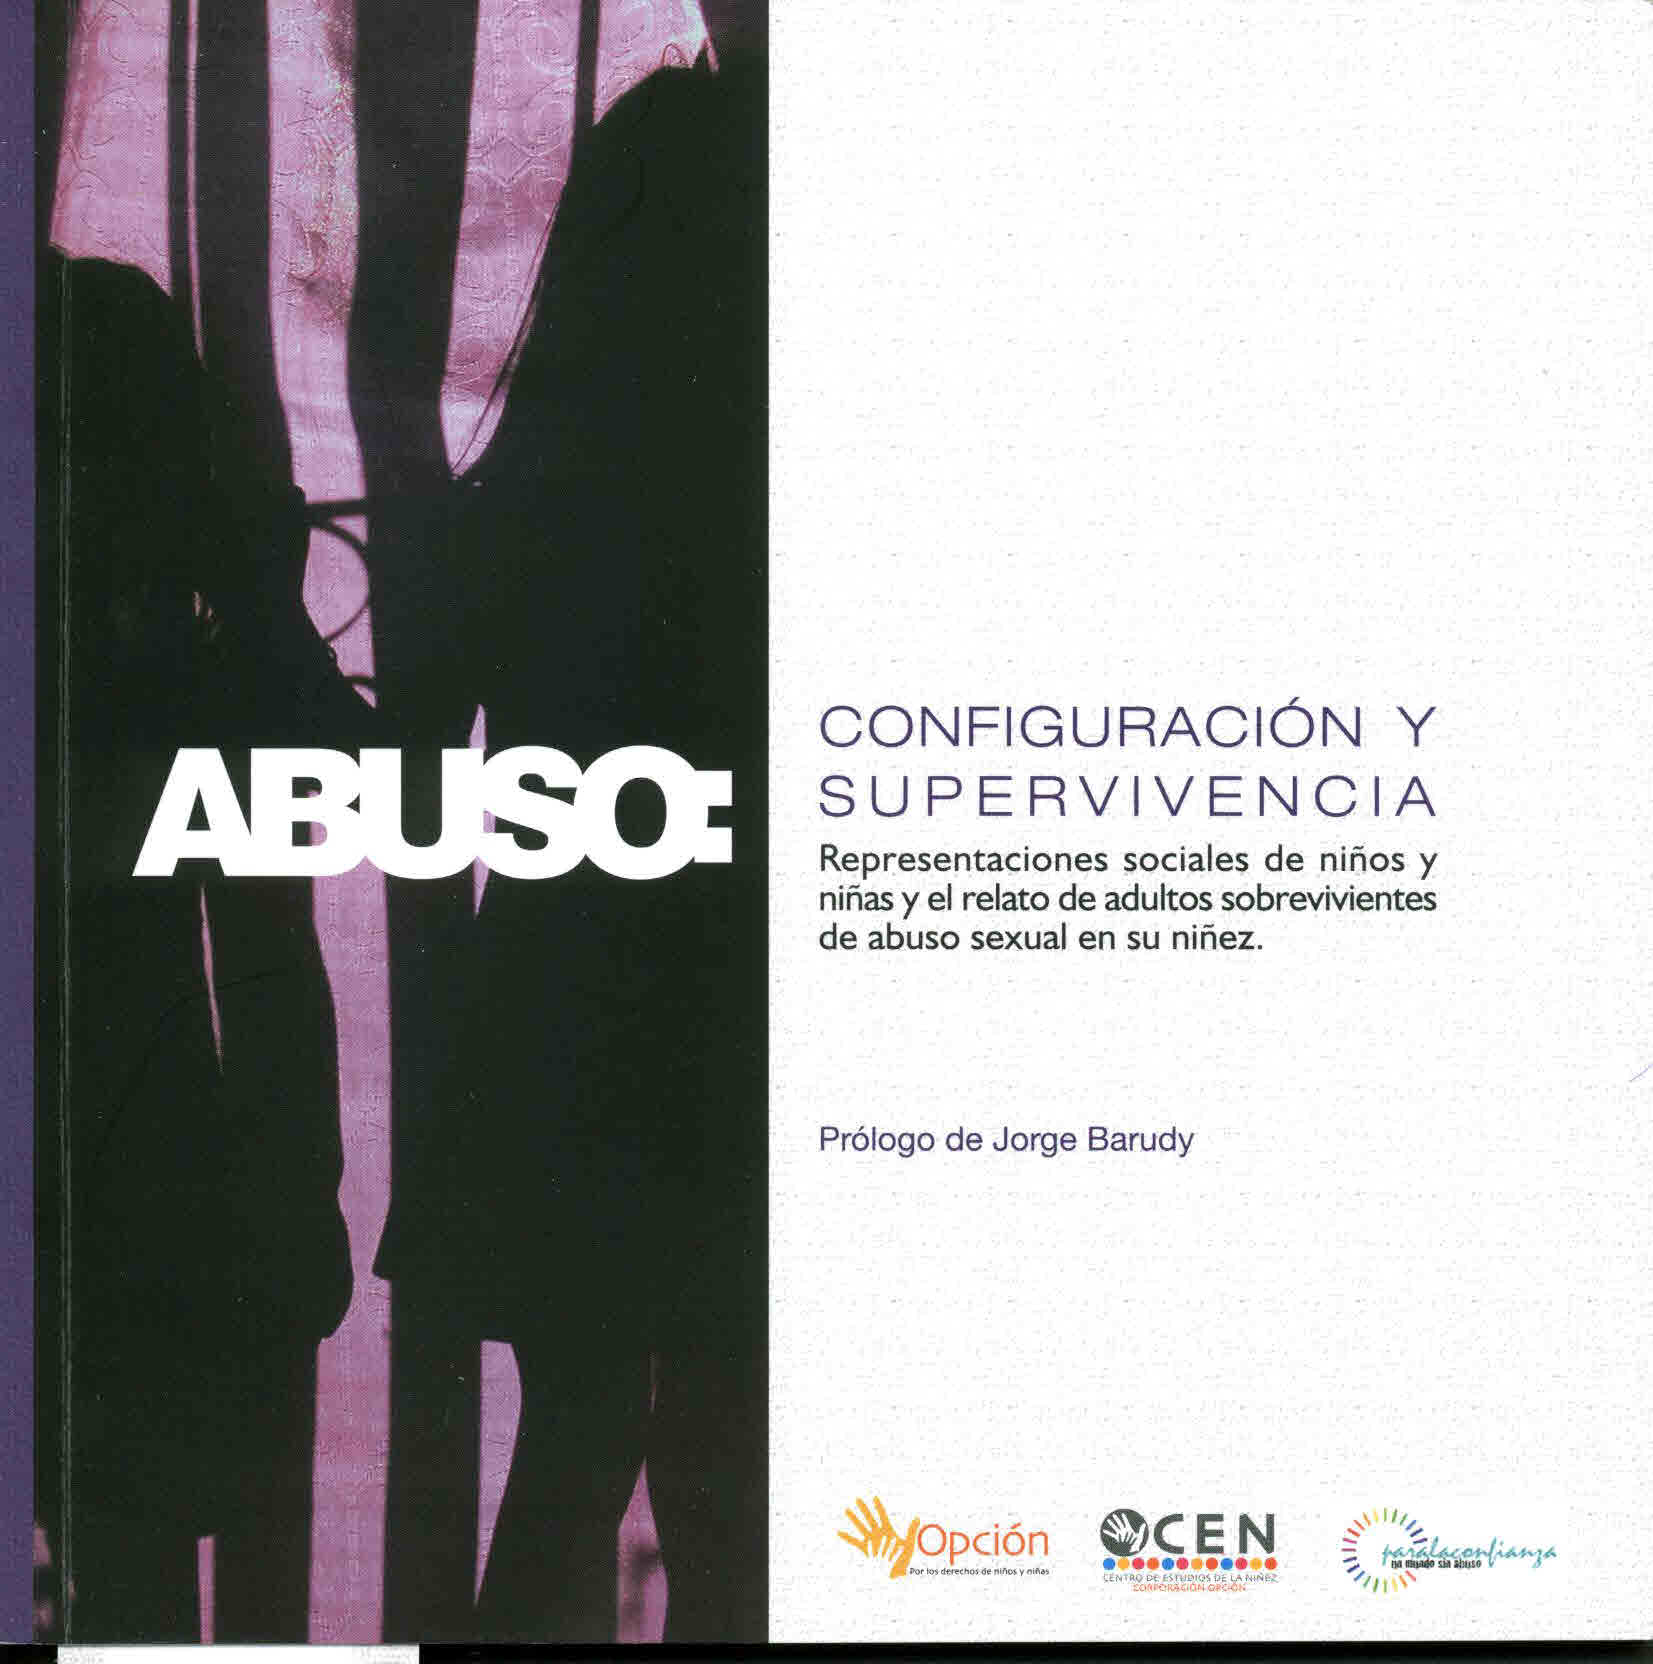 Abuso: Configuración y supervivencia. Representaciones sociales de niños y niñas y el relato de adultos sobrevivientes de abuso sexual en su niñez